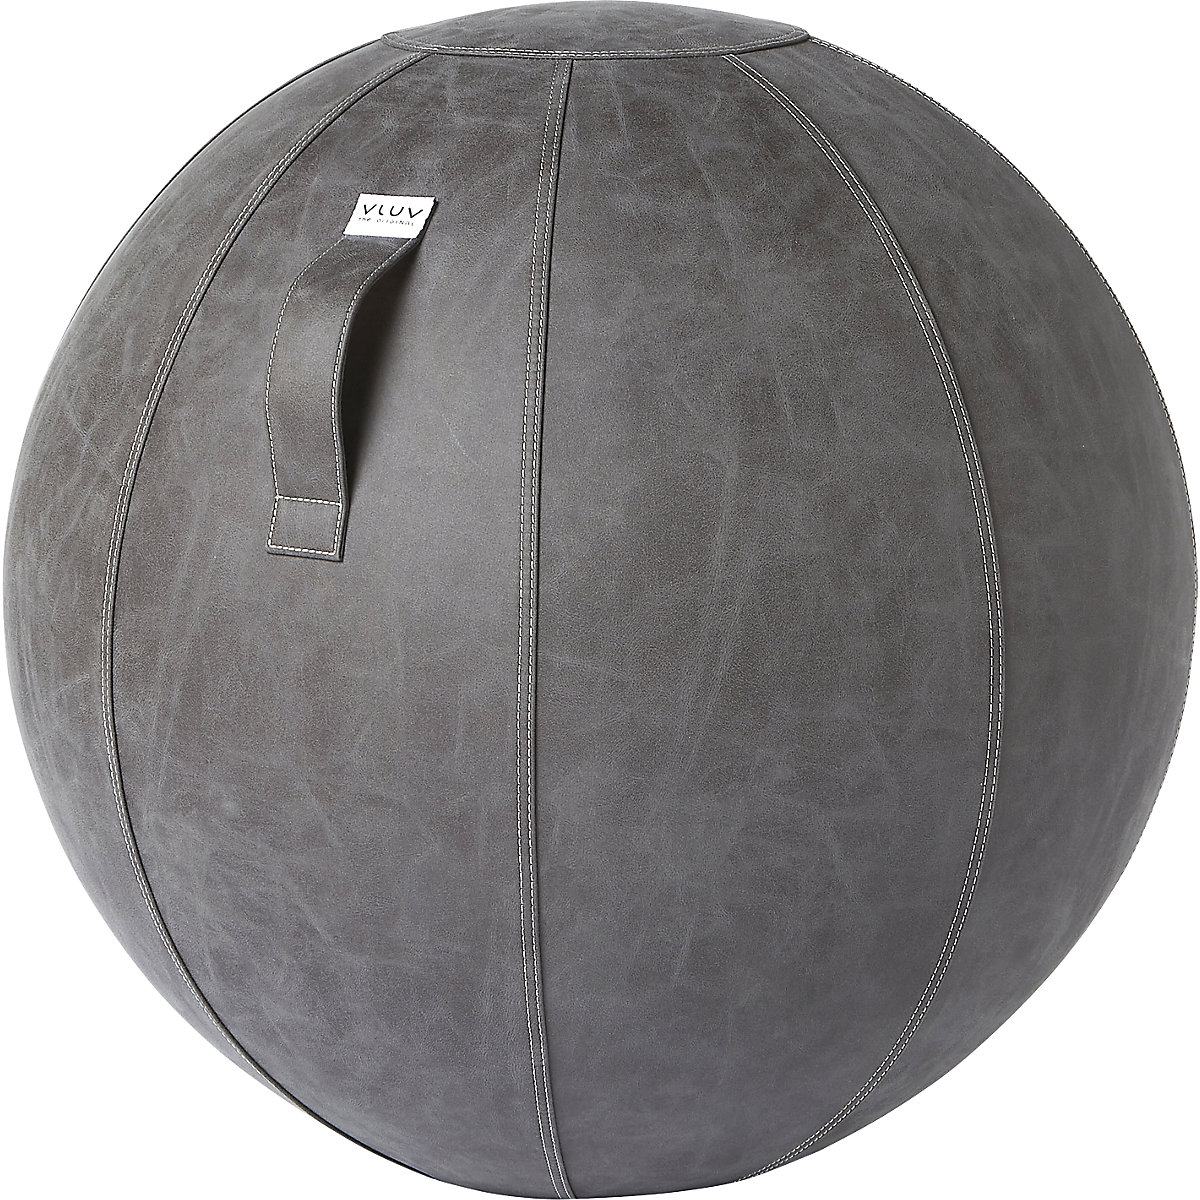 VEGA Swiss ball – VLUV, vegan vinyl, 700 – 750 mm, dark grey-7